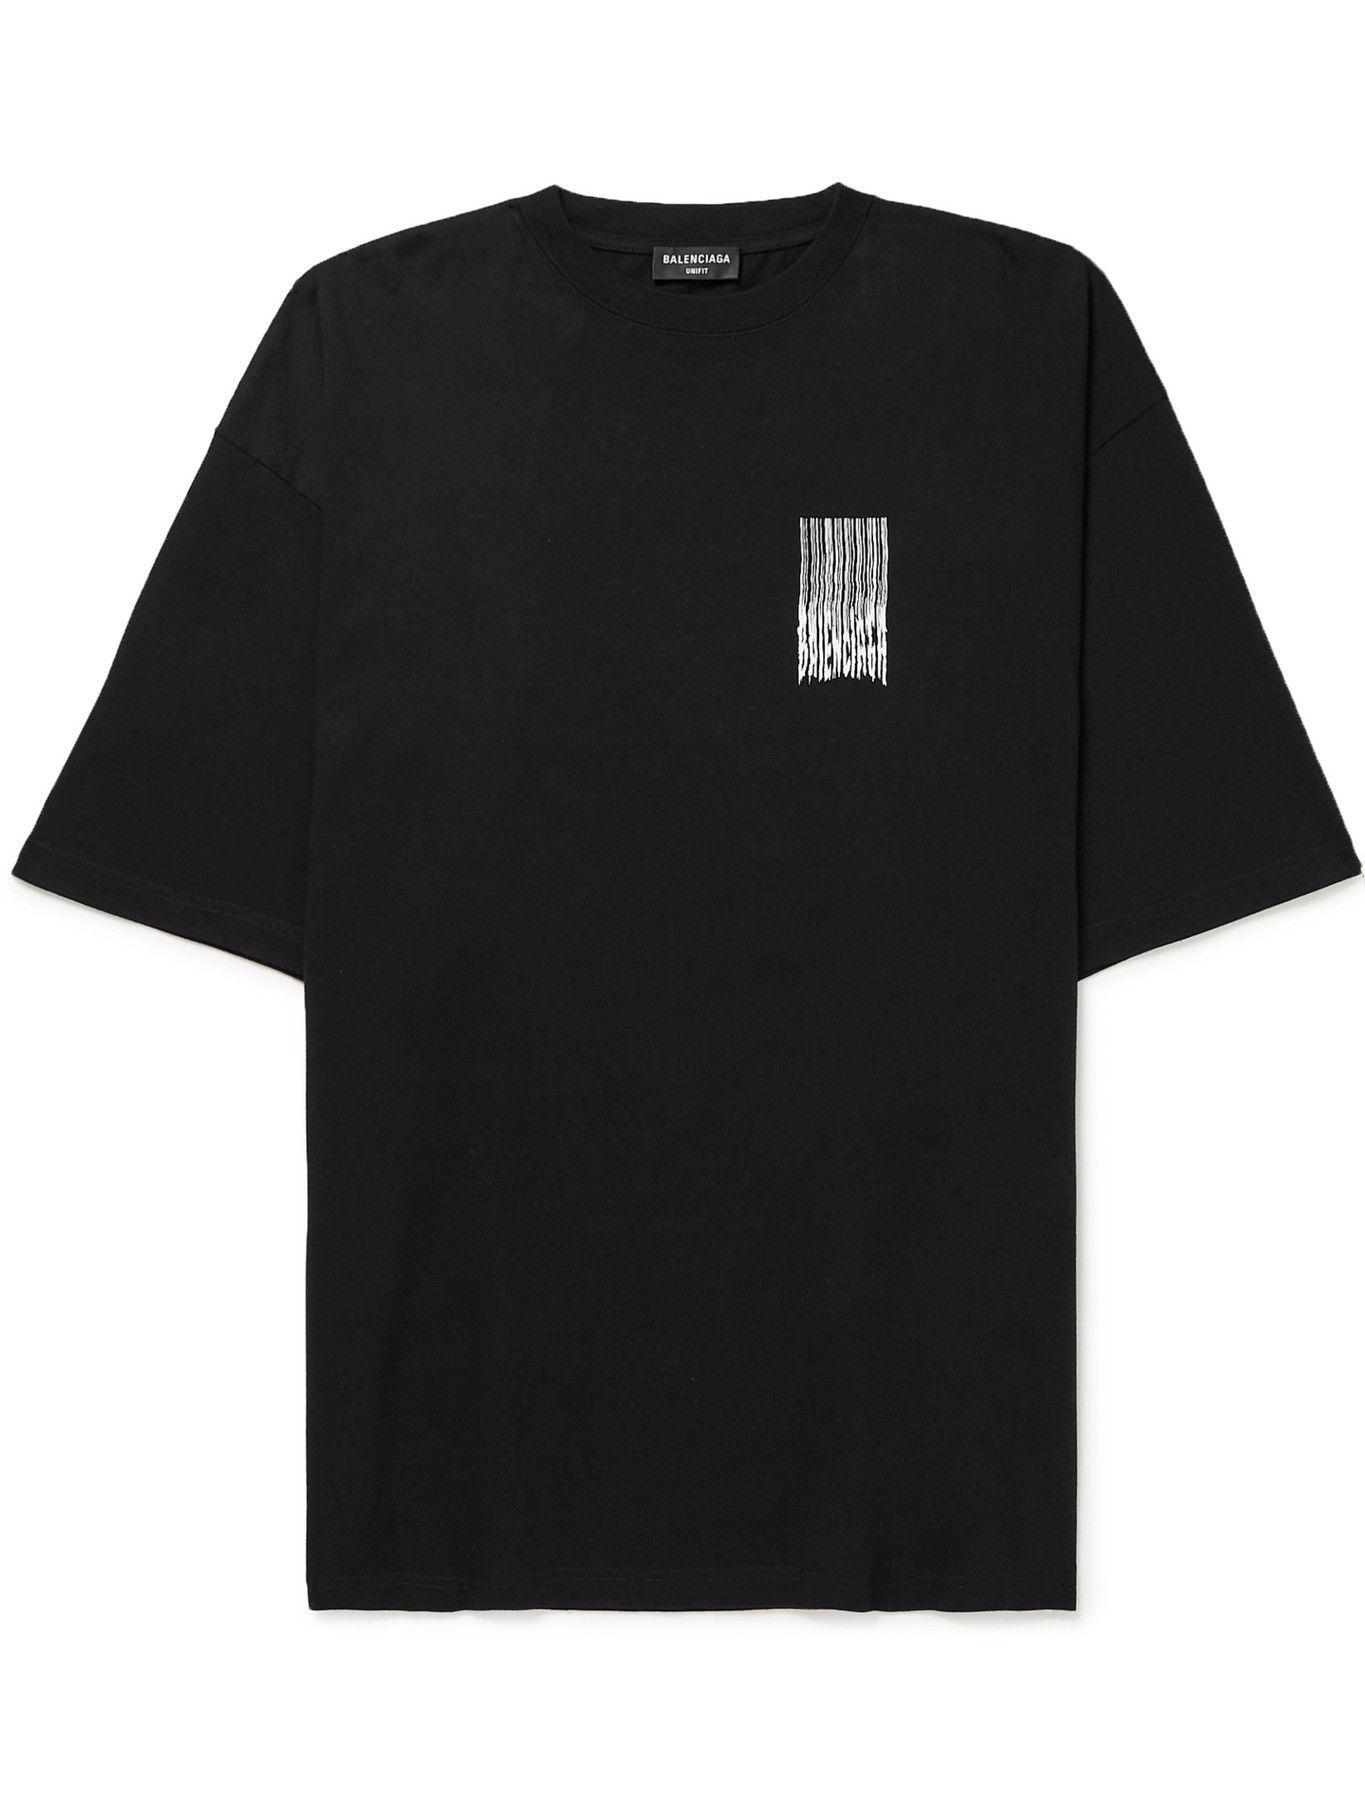 BALENCIAGA - Printed Cotton-Jersey T-Shirt - Black Balenciaga